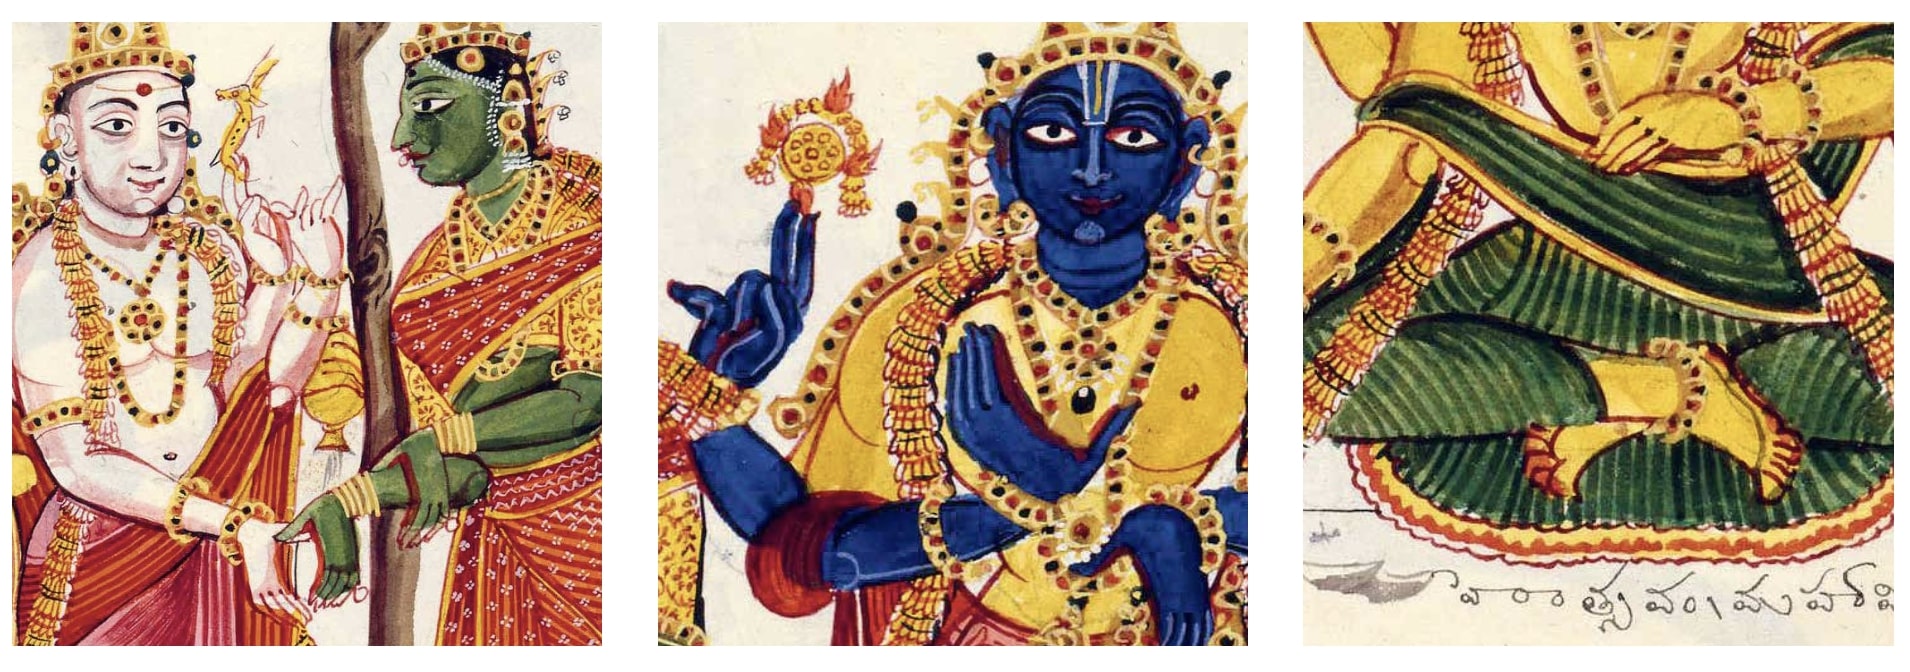 A négykarú, kezeiben hagyományos attribútumait fogó Siva Párvatí kezét tartja, részlet / Visnu kezei félelmet eloszlató és áldásosztó kéztartásban, részlet / Brahmá lótuszülésben, részlet